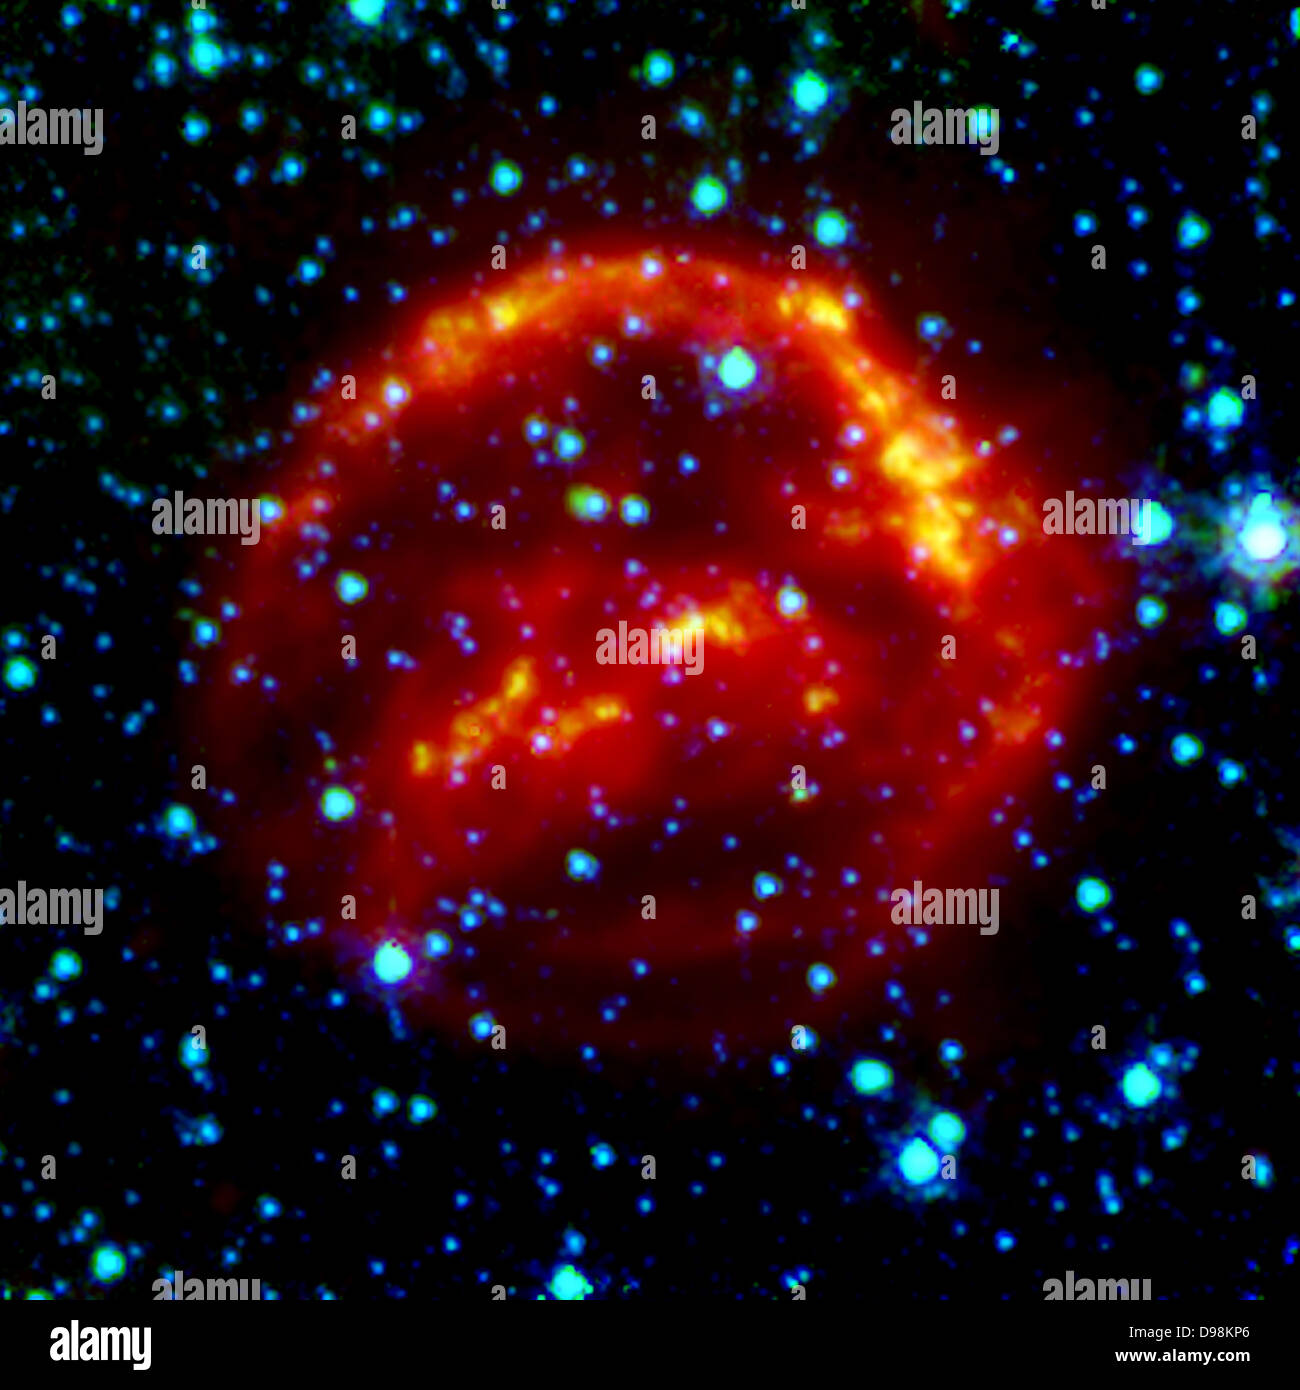 Remanentes de Supernova de Kepler: Una vista desde el Telescopio Espacial Spitzer. Esta imagen en colores falsos de Spitzer es un compuesto de datos desde Foto de stock